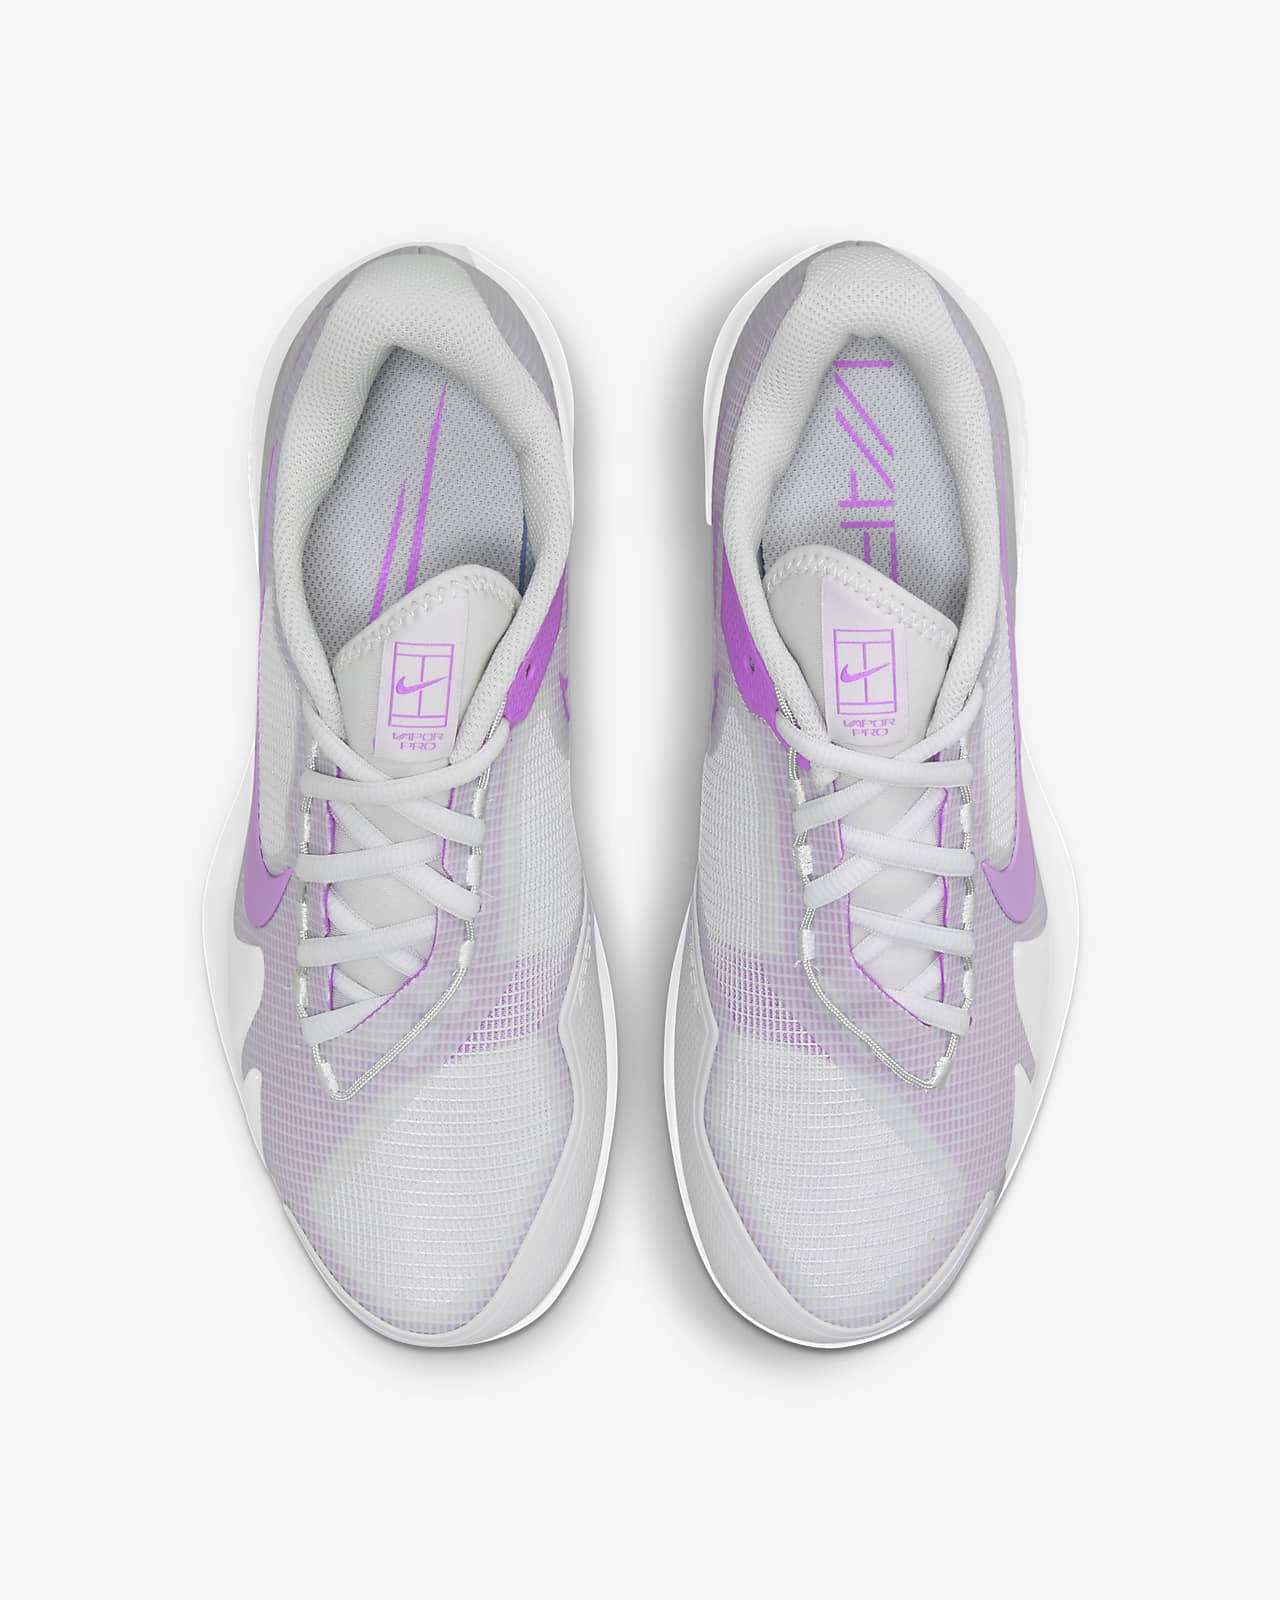 nike women's clay court tennis shoes